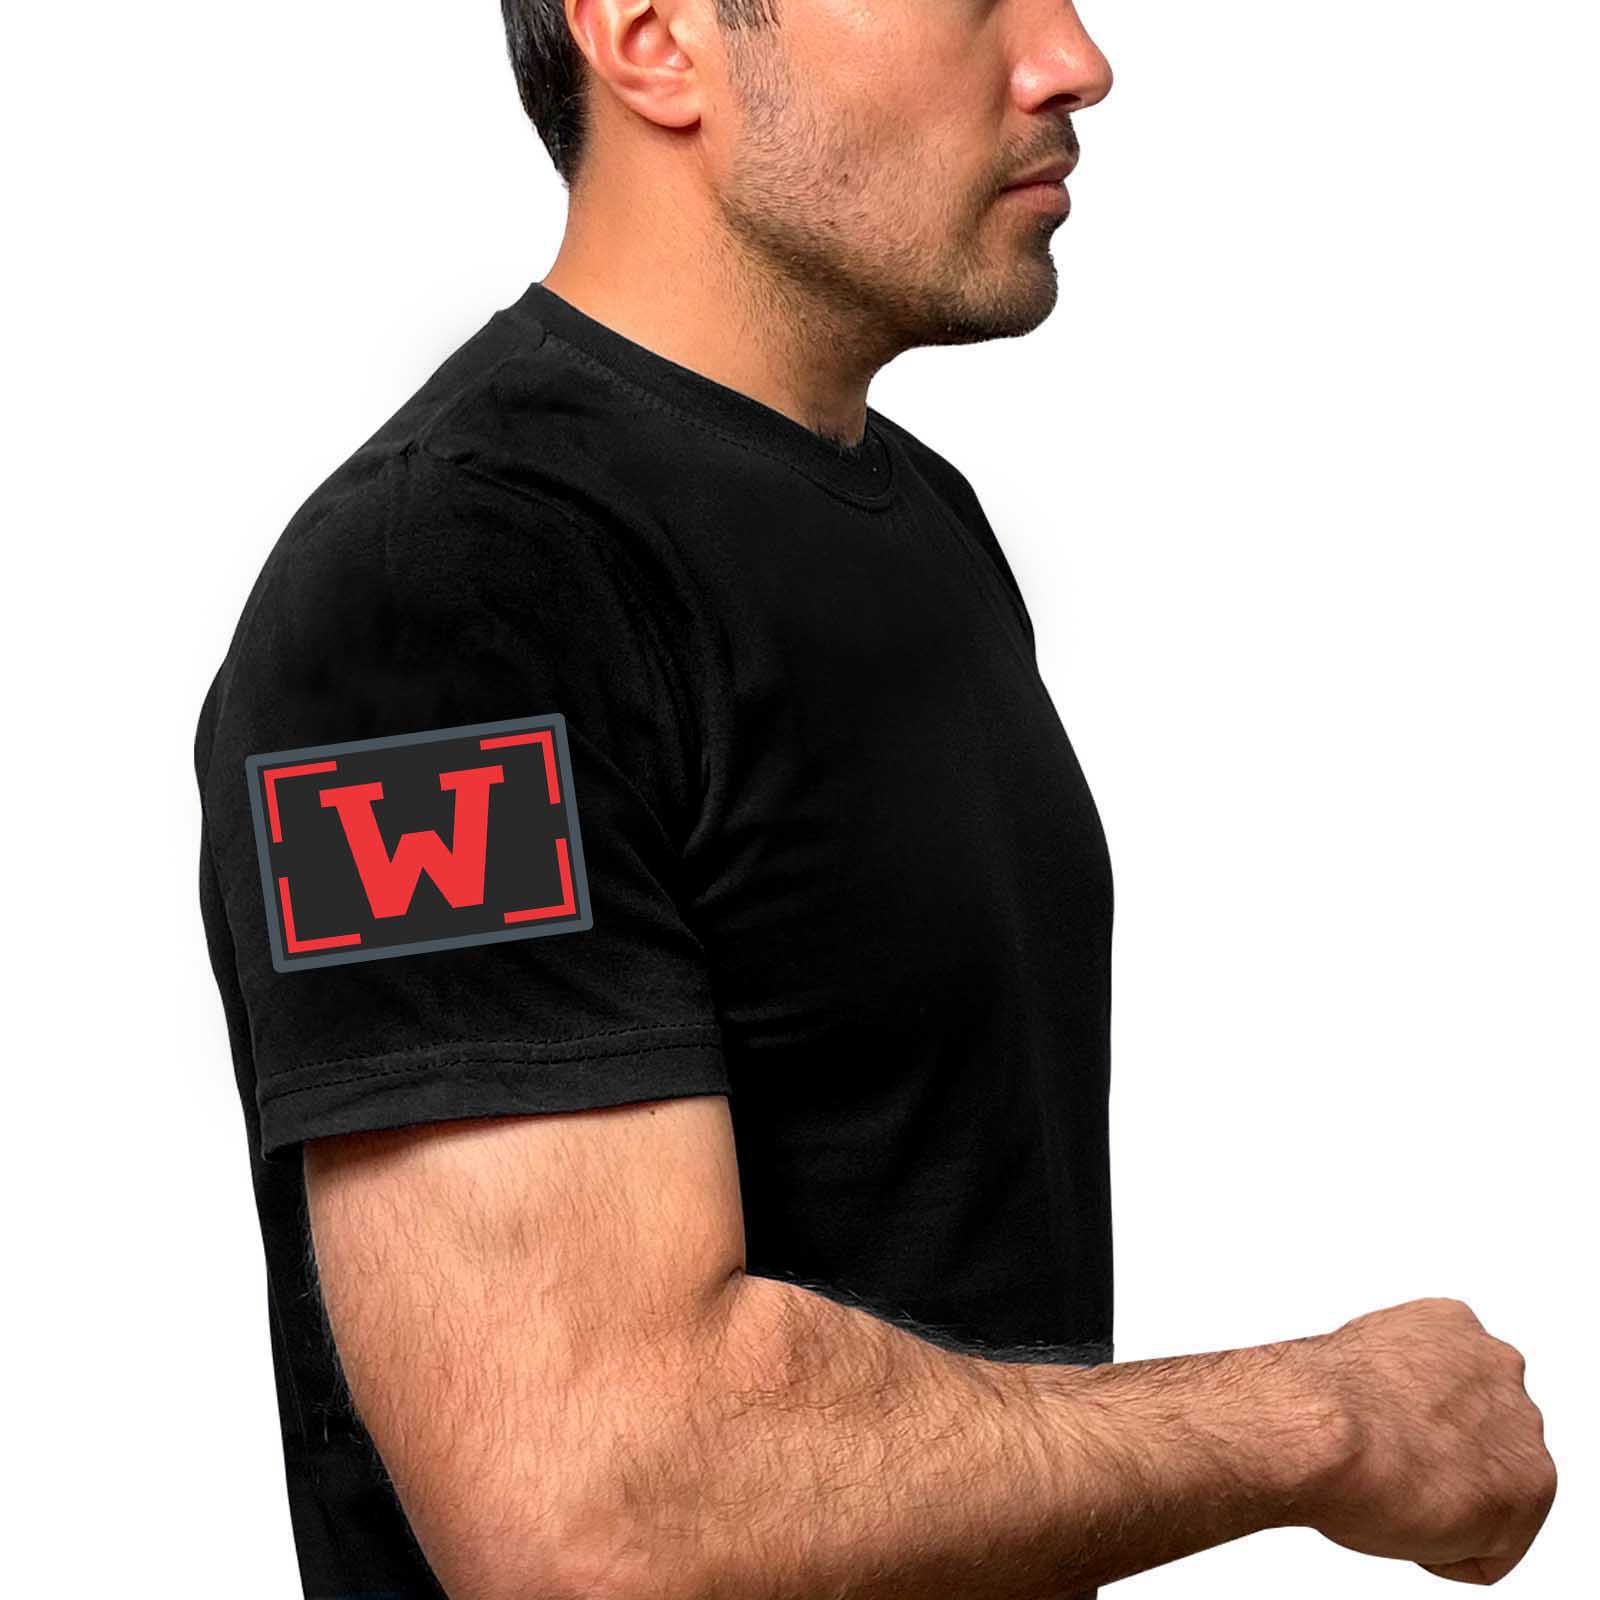 Купить мужскую оригинальную футболку с термотрансфером W онлайн